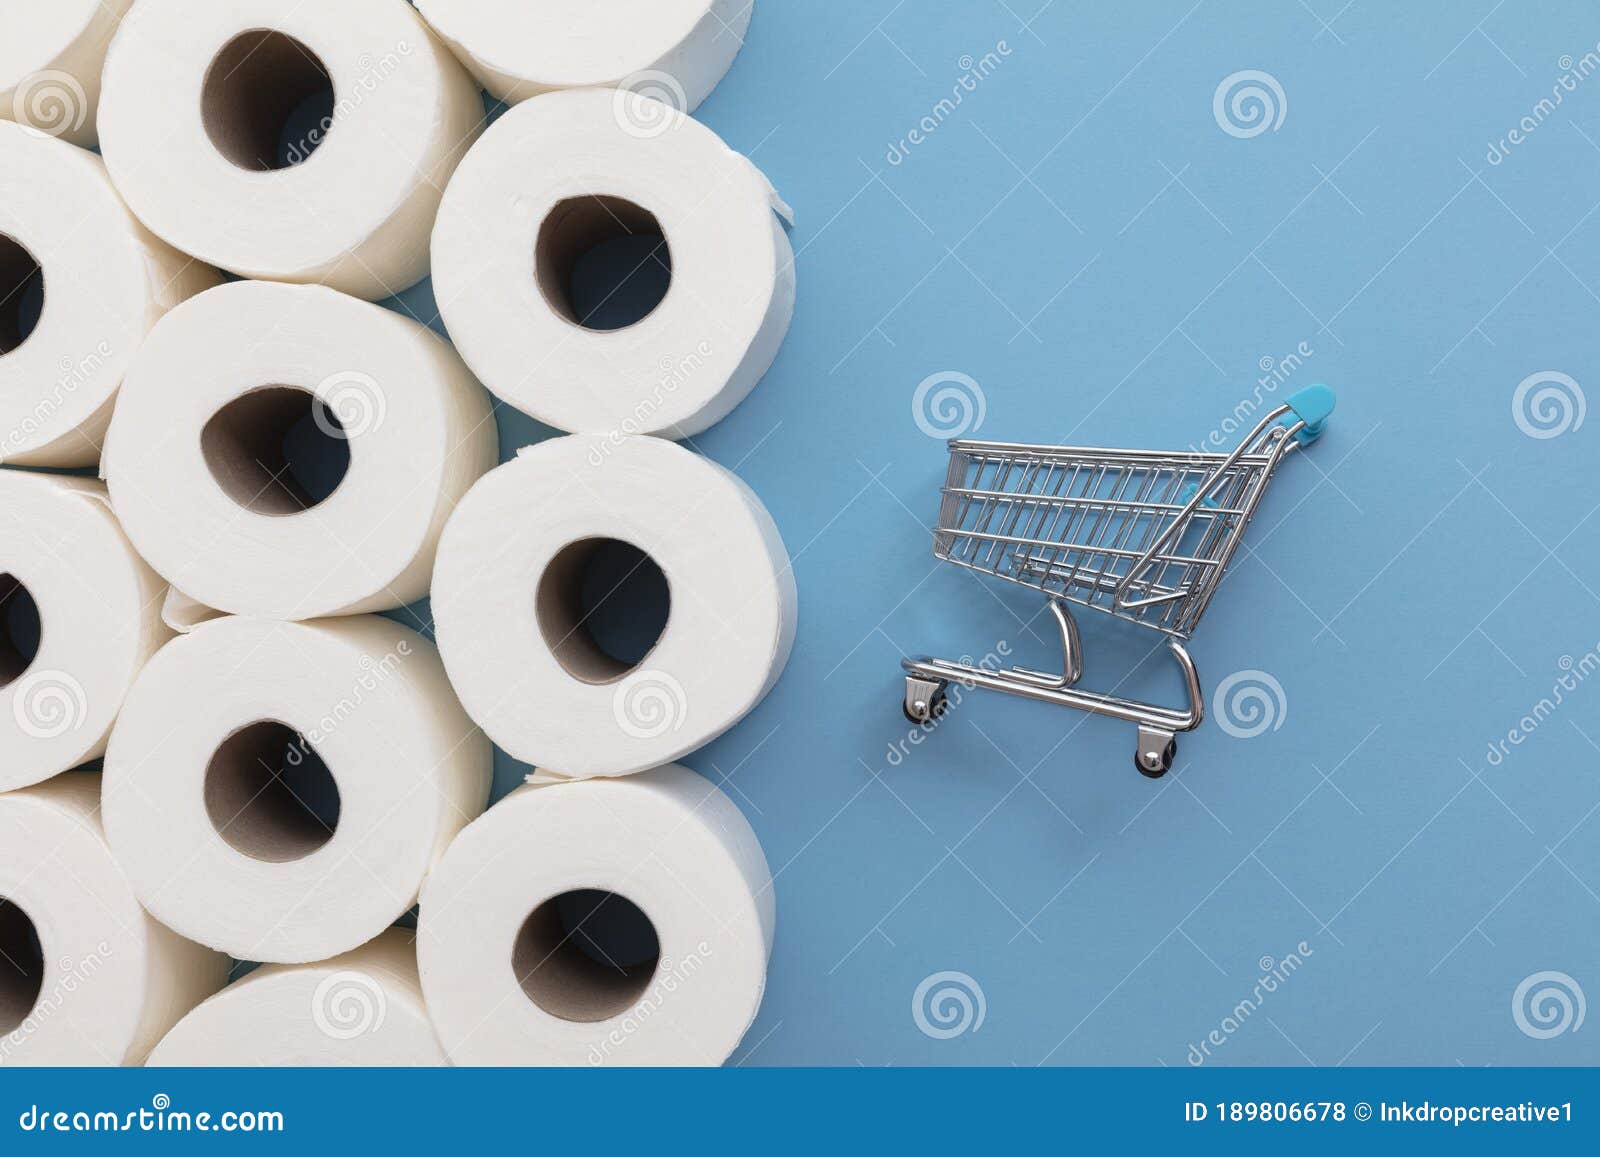 Rolo de papel higiênico branco com um carrinho de compras em um